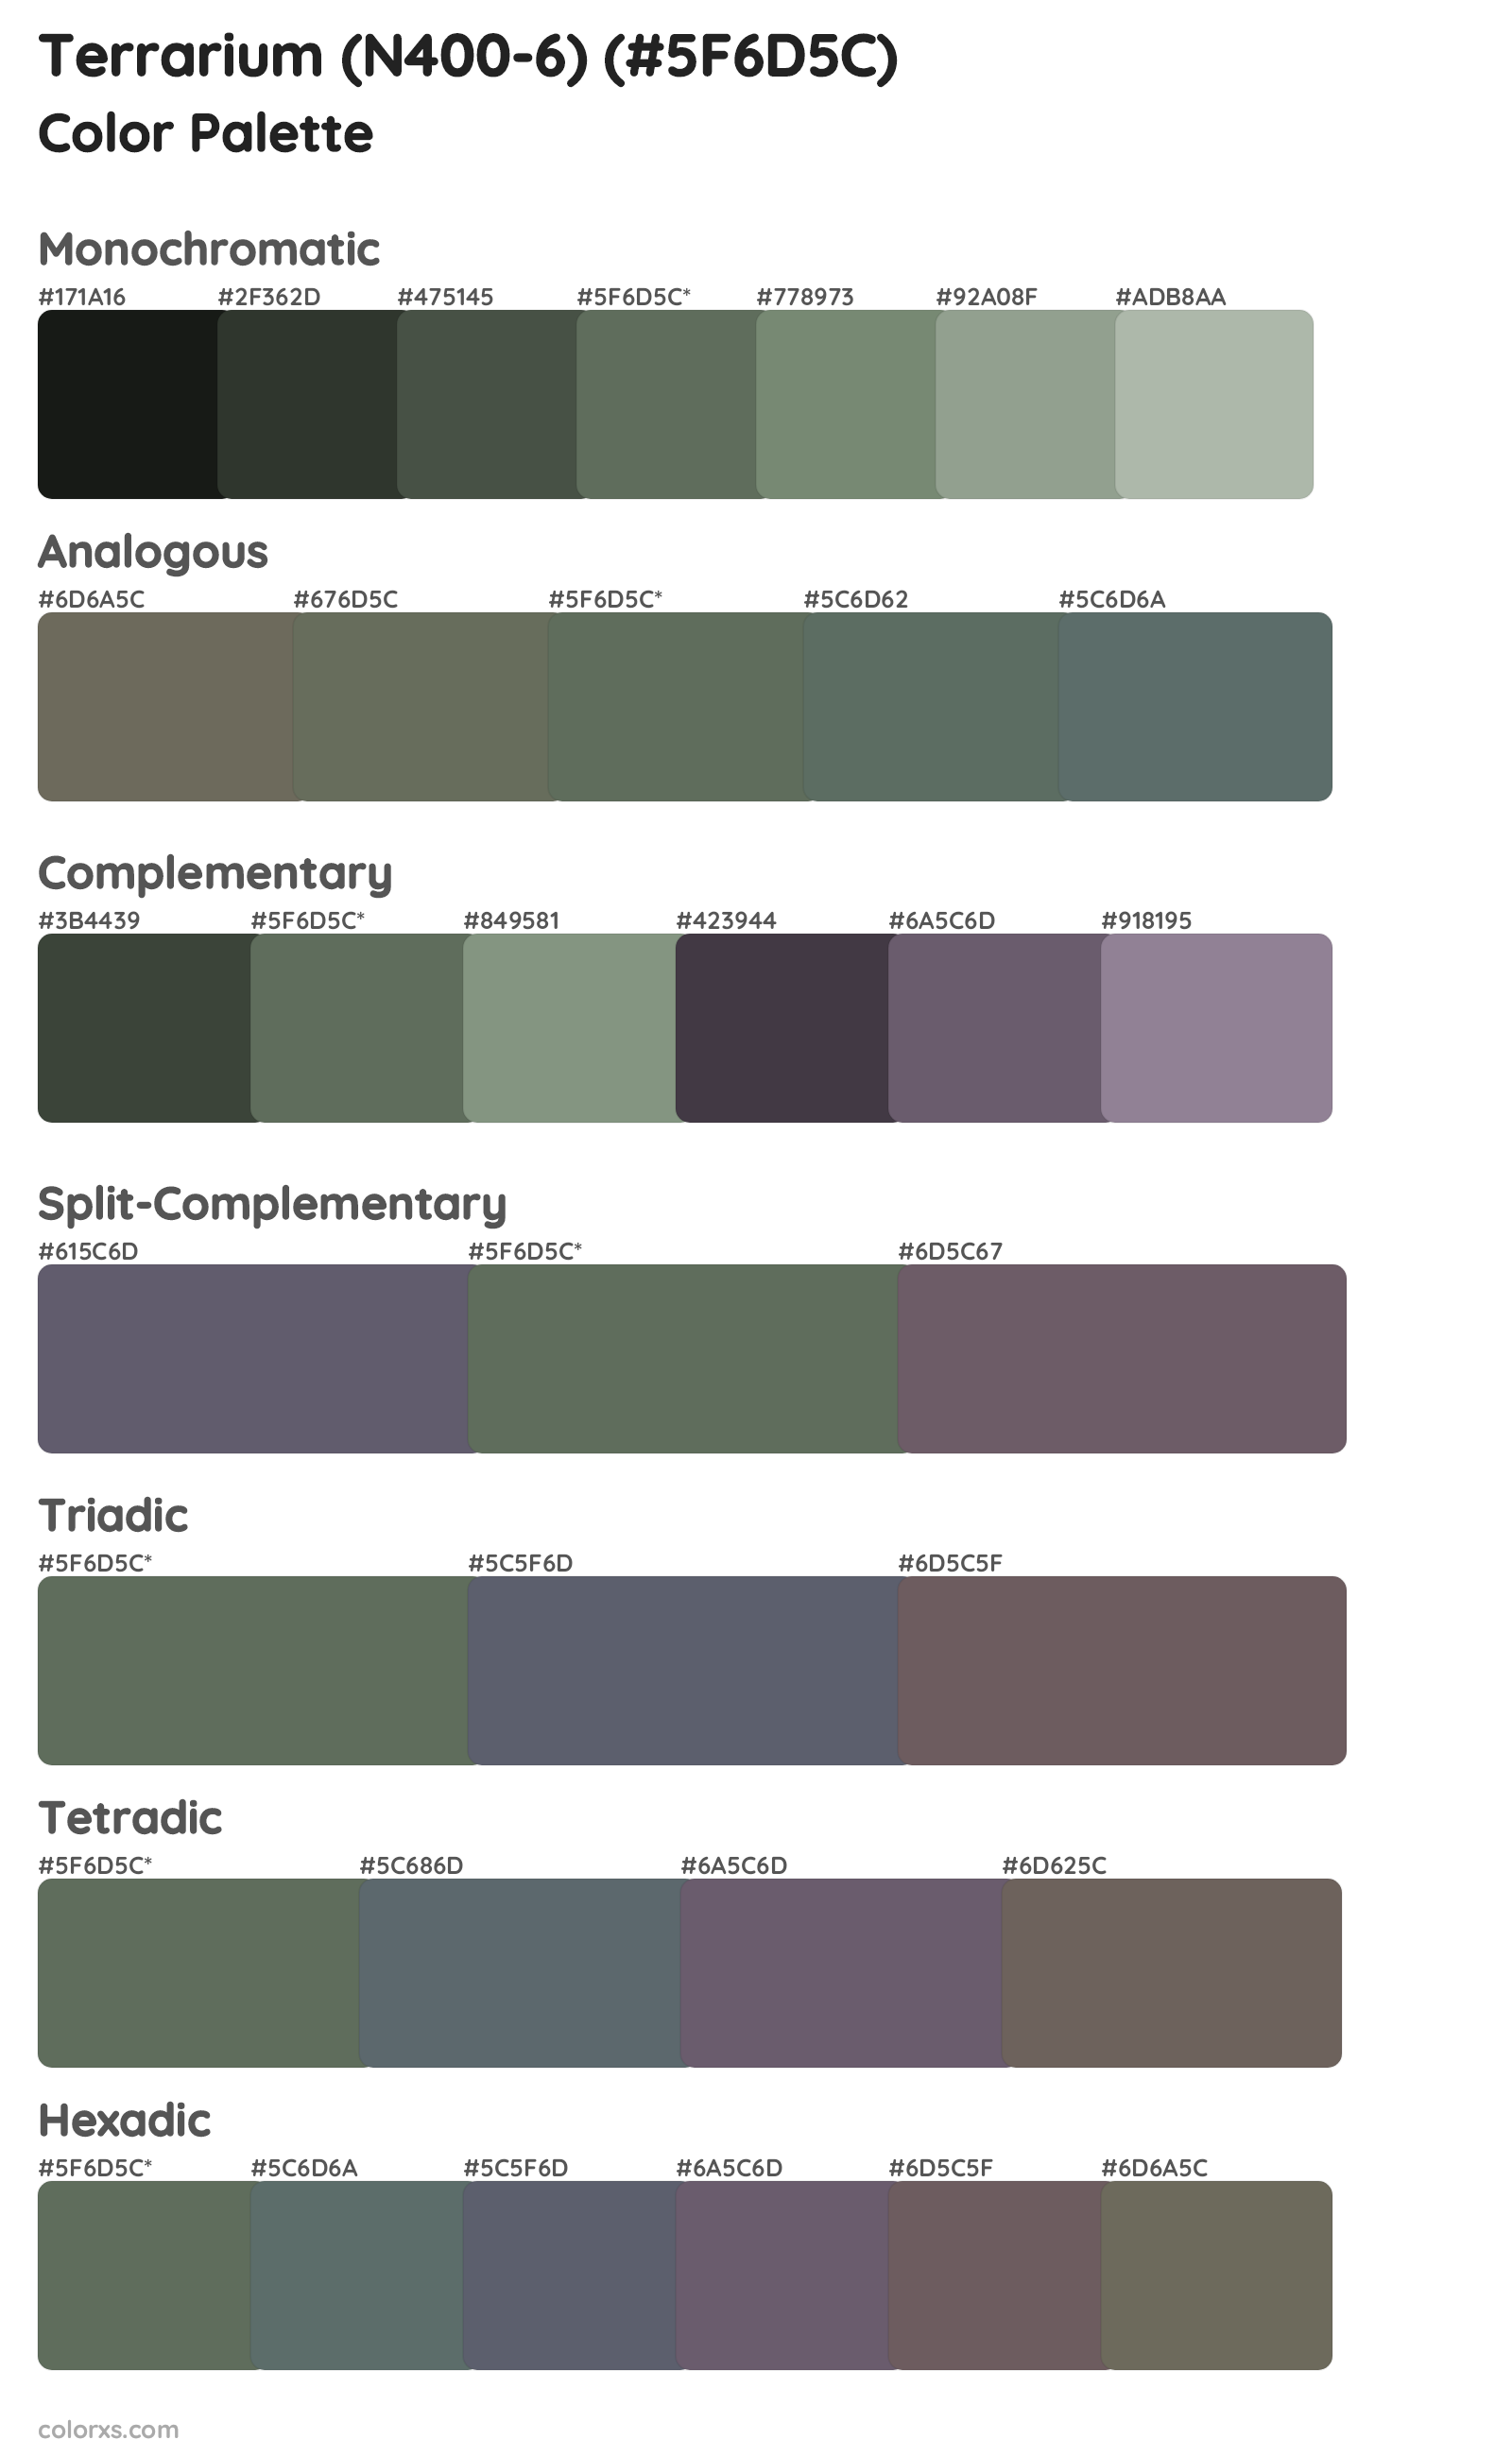 Terrarium (N400-6) Color Scheme Palettes